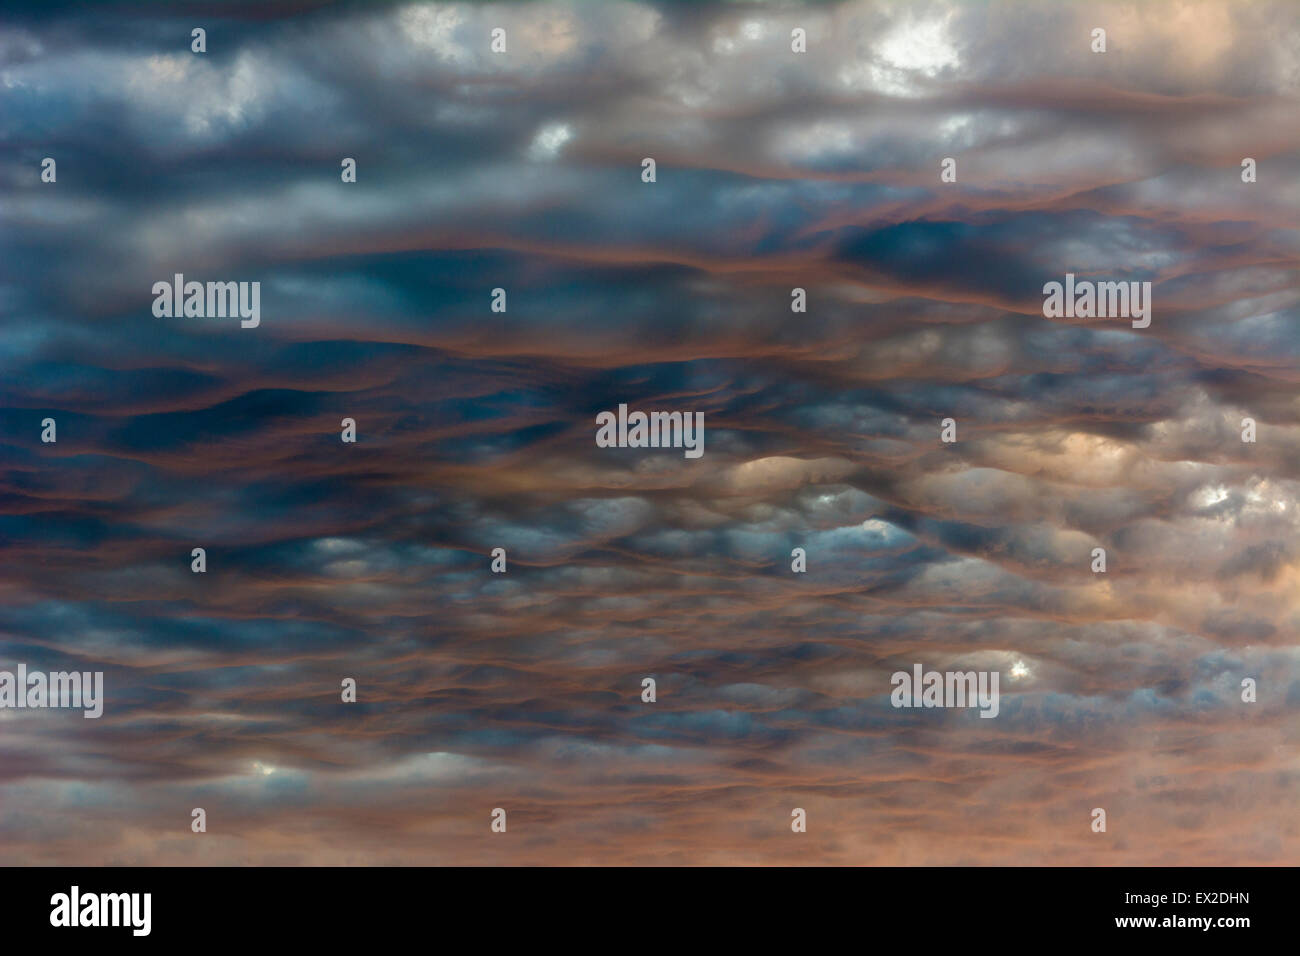 L'Altocumulus undulatus nuages allumé par le bas par la chaude lumière du soleil couchant. Banque D'Images